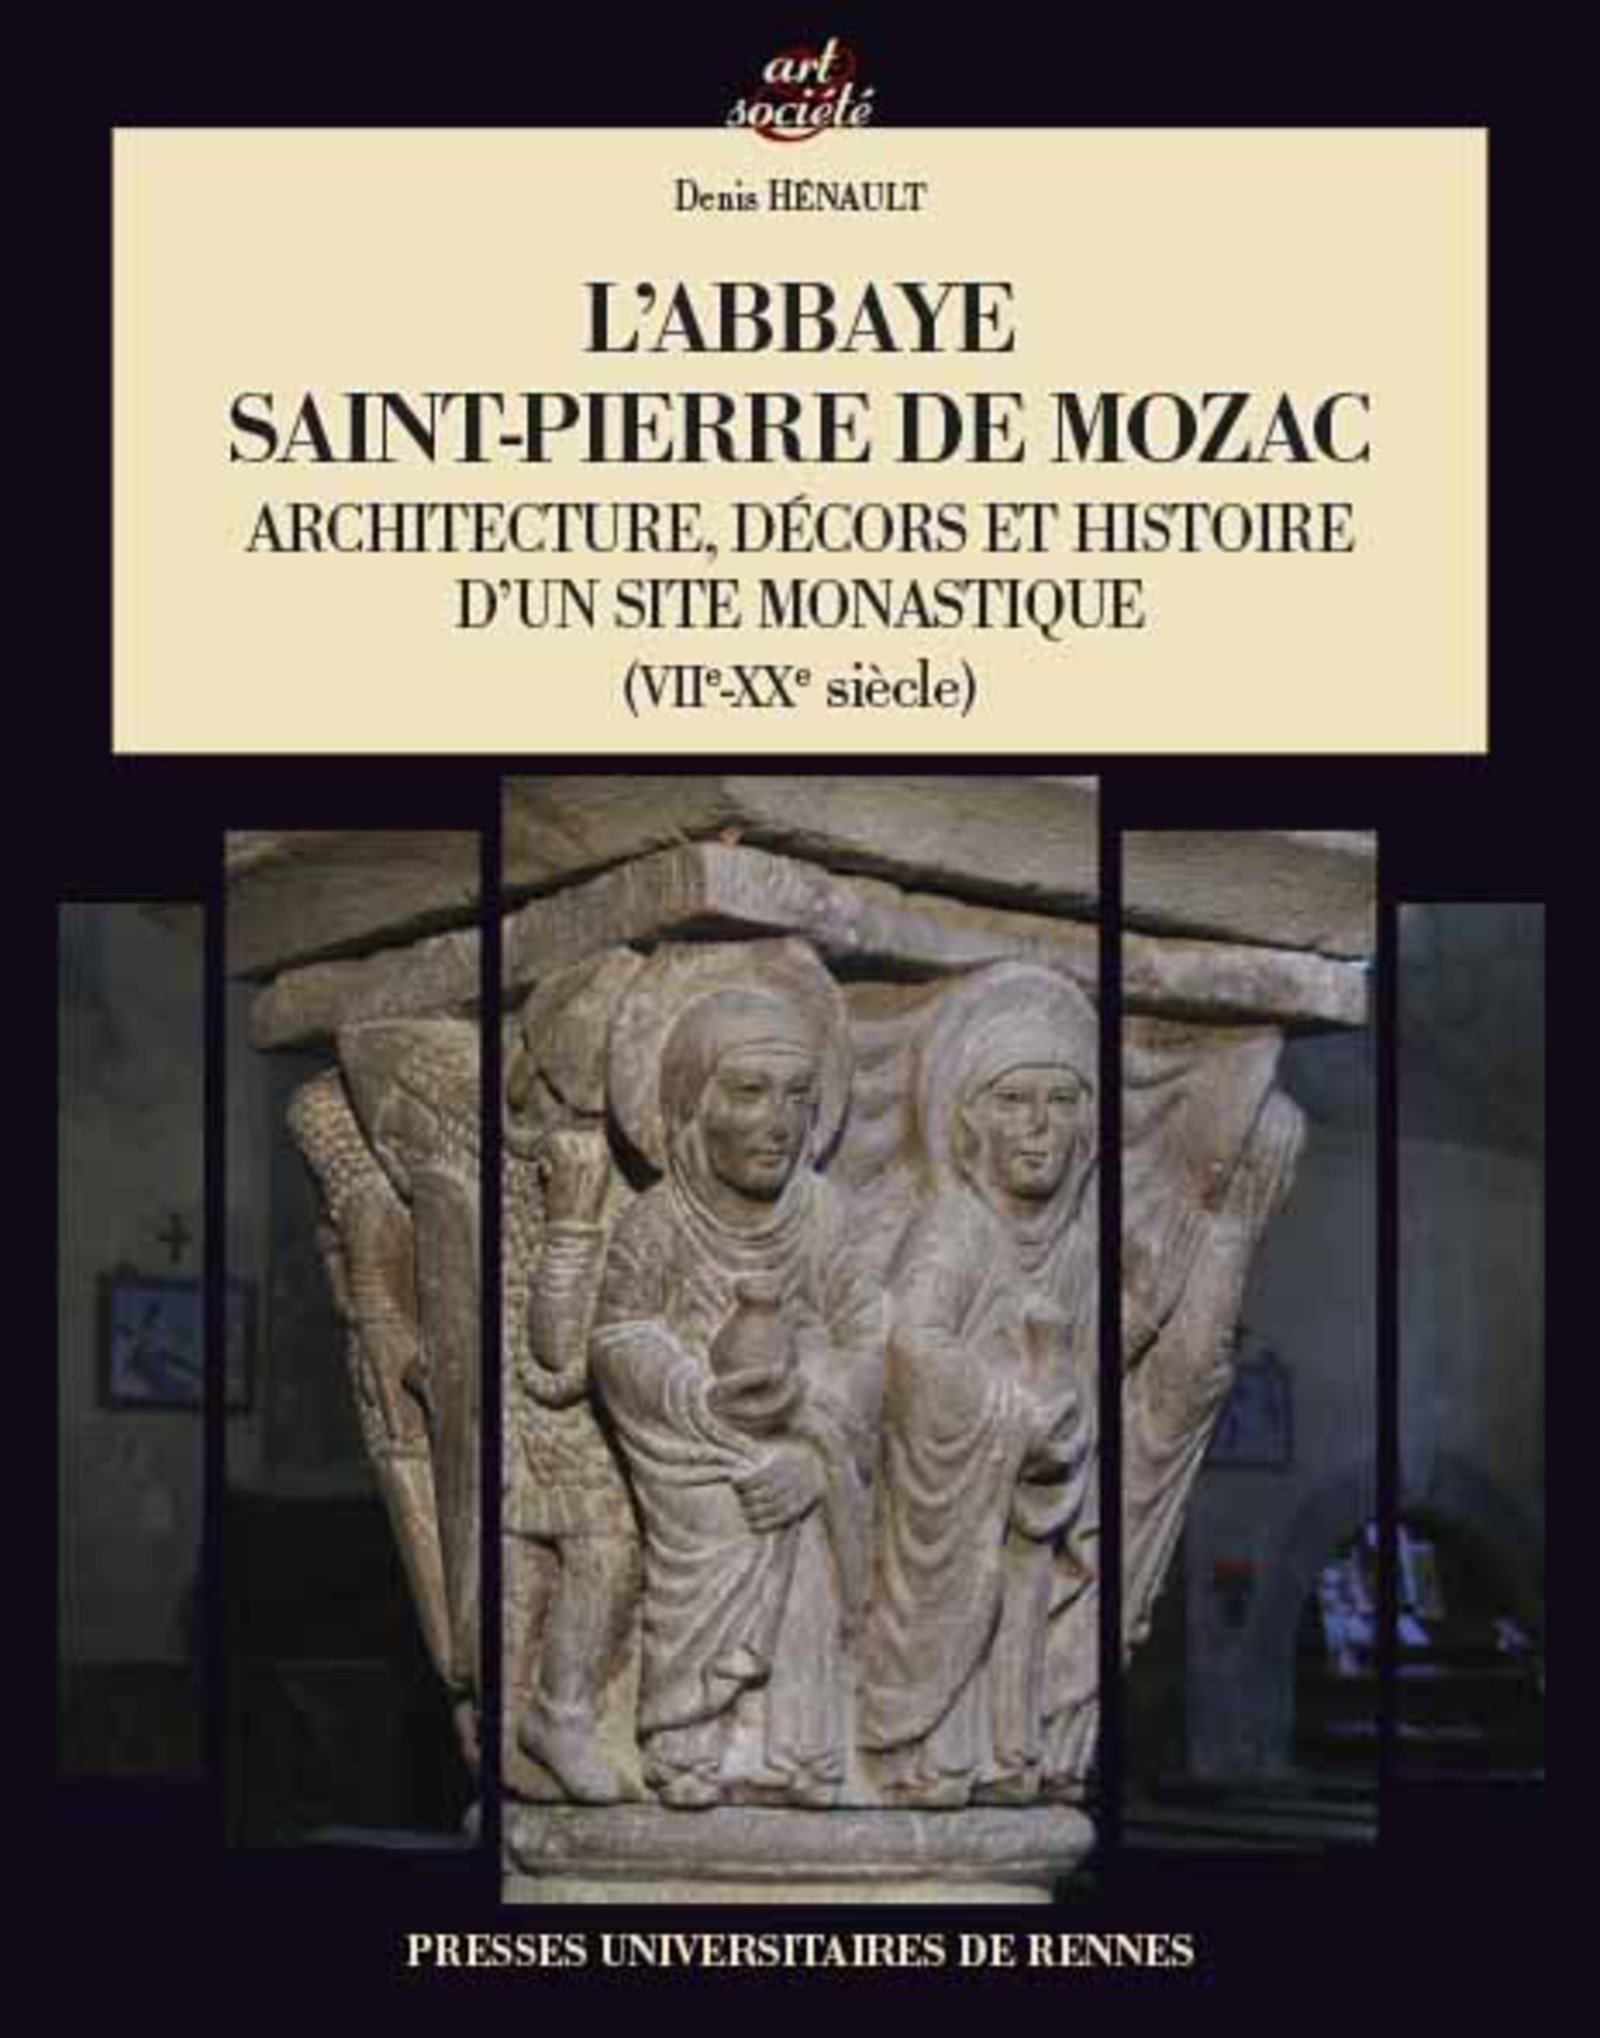 L'abbaye Saint-Pierre de Mozac. Architecture, décors et histoire d'un site monastique (VIIe-XXe siècle), 2017, 452 p.